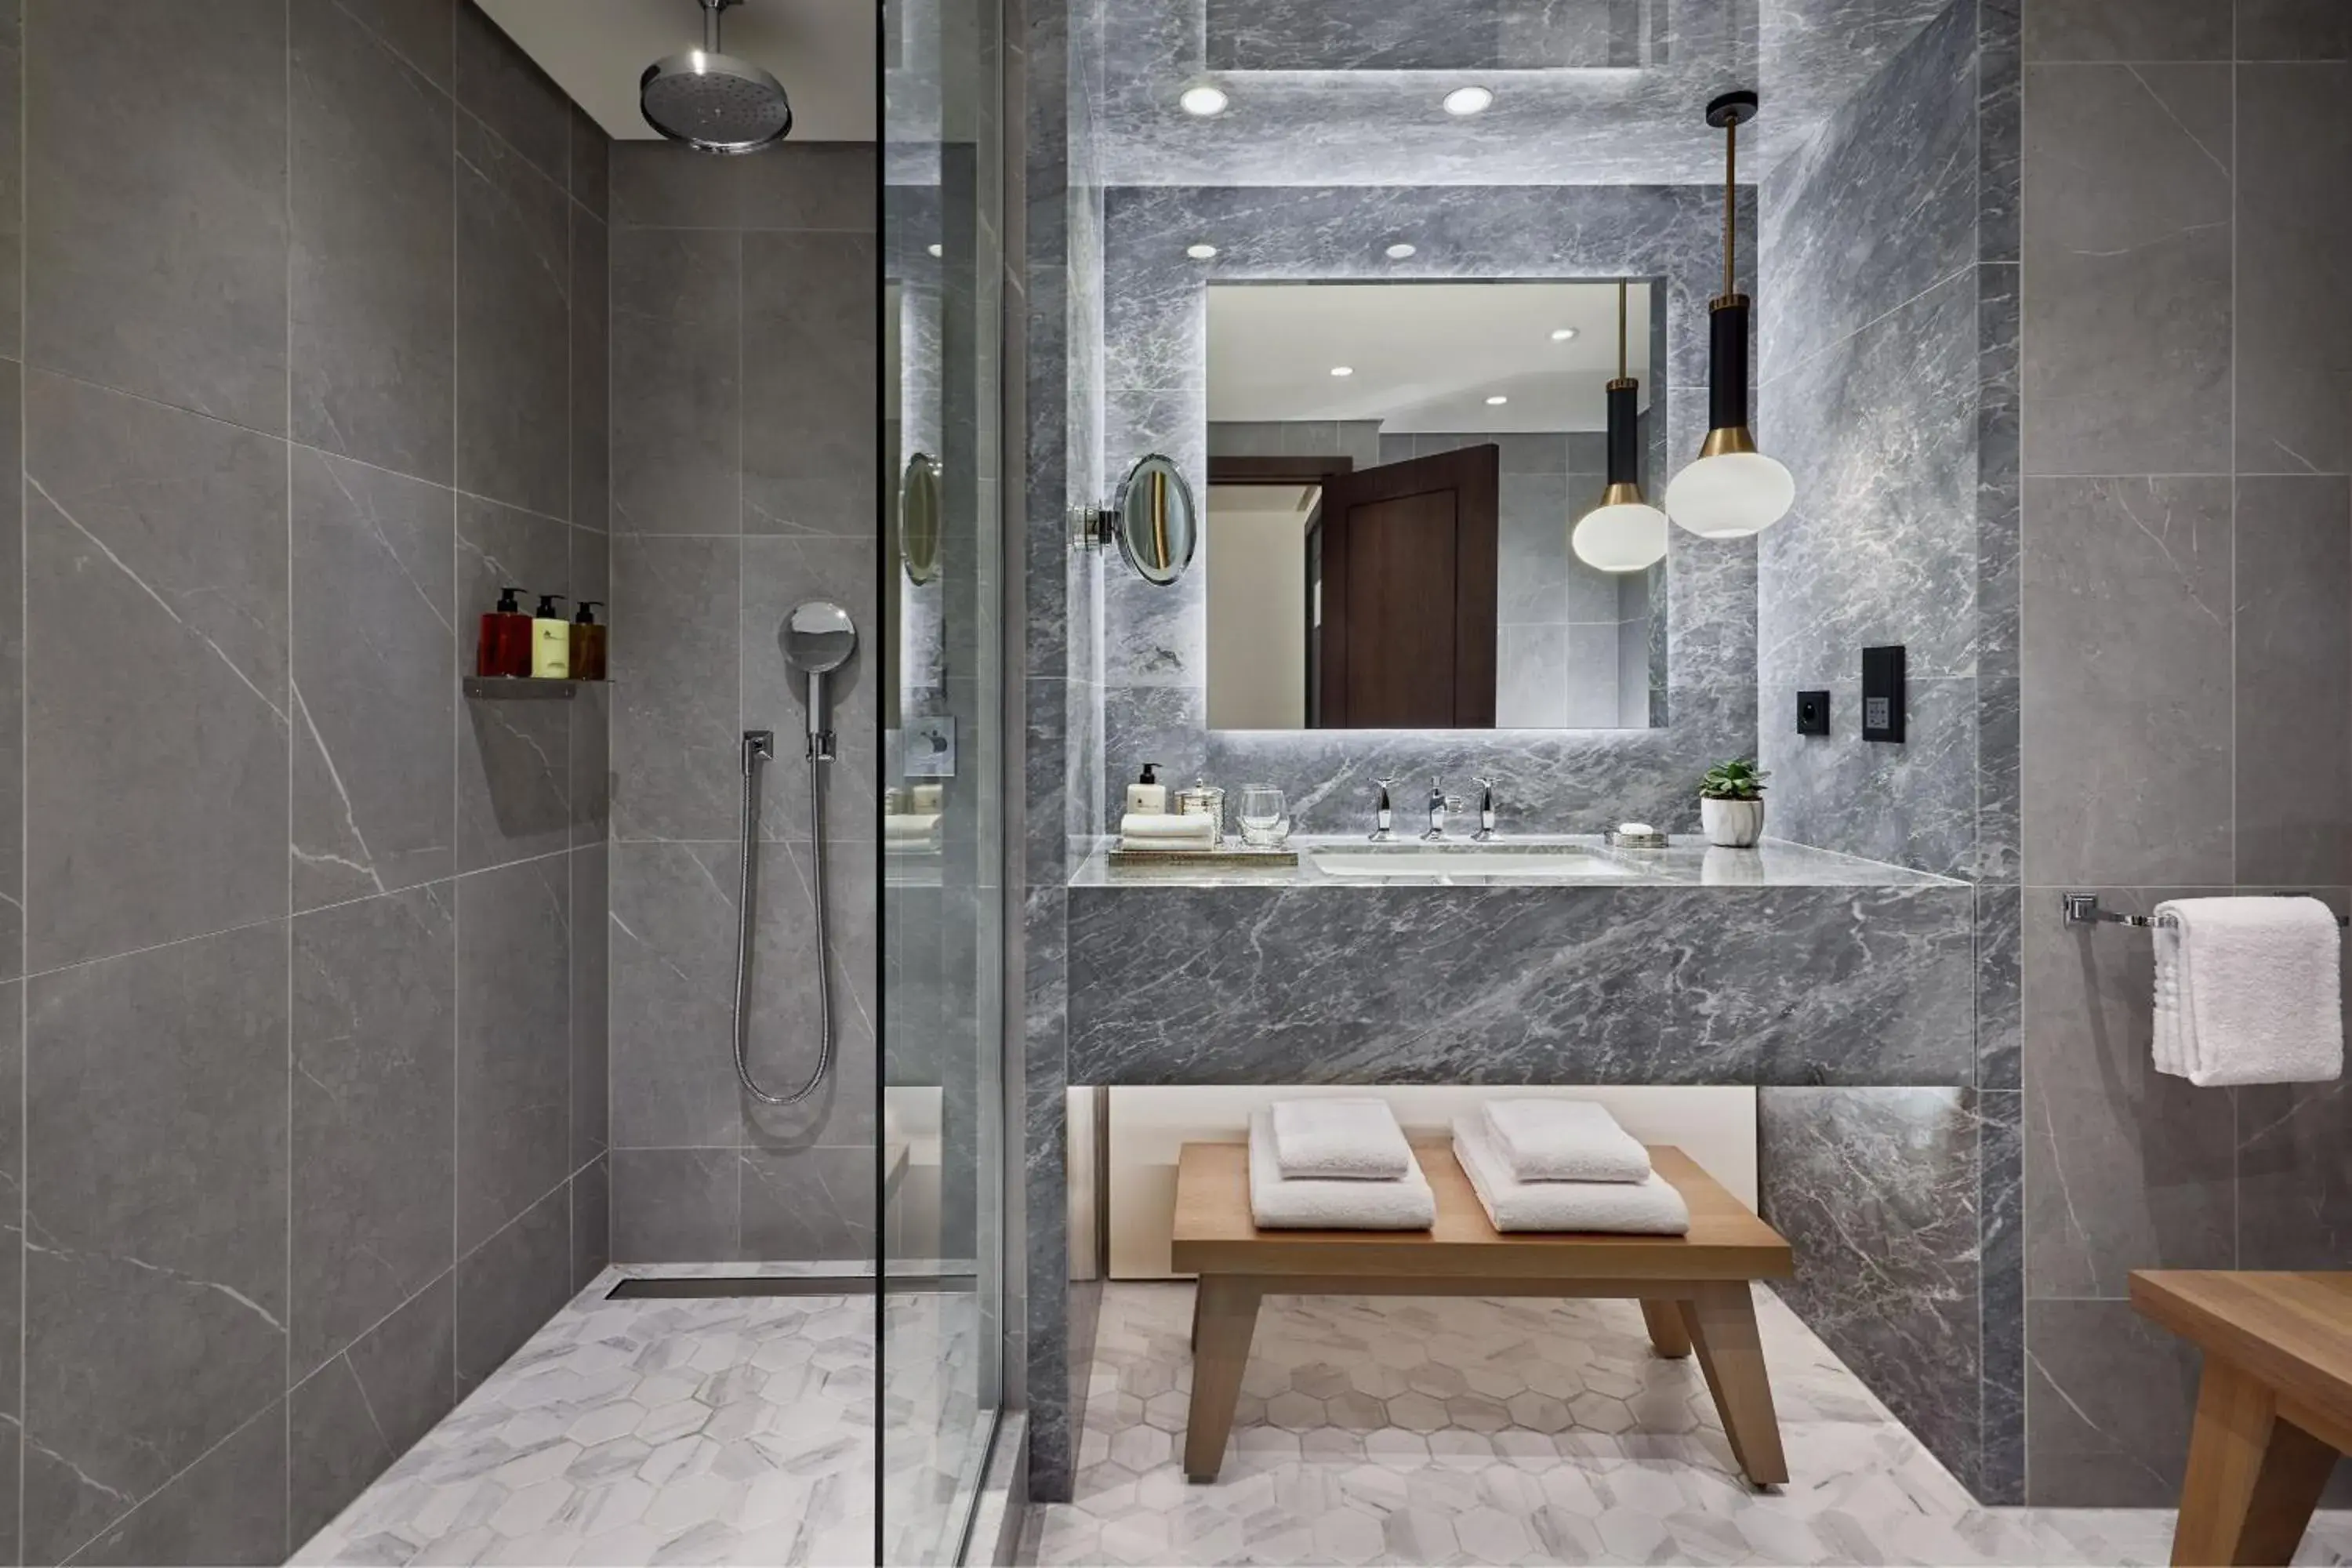 Bathroom in Paris Marriott Champs Elysees Hotel